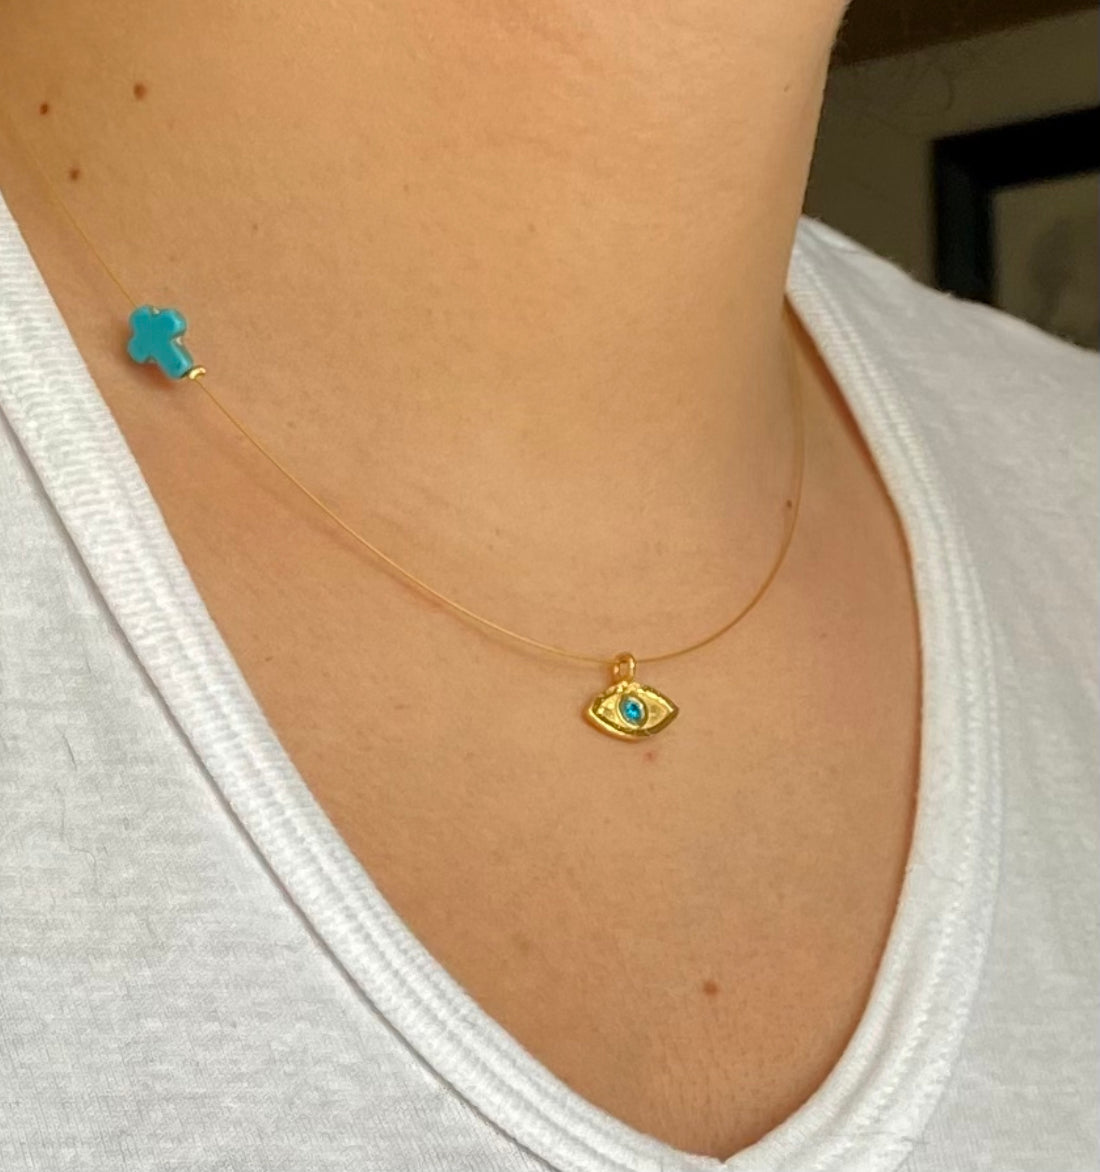 evil eye necklace gold with blue gem